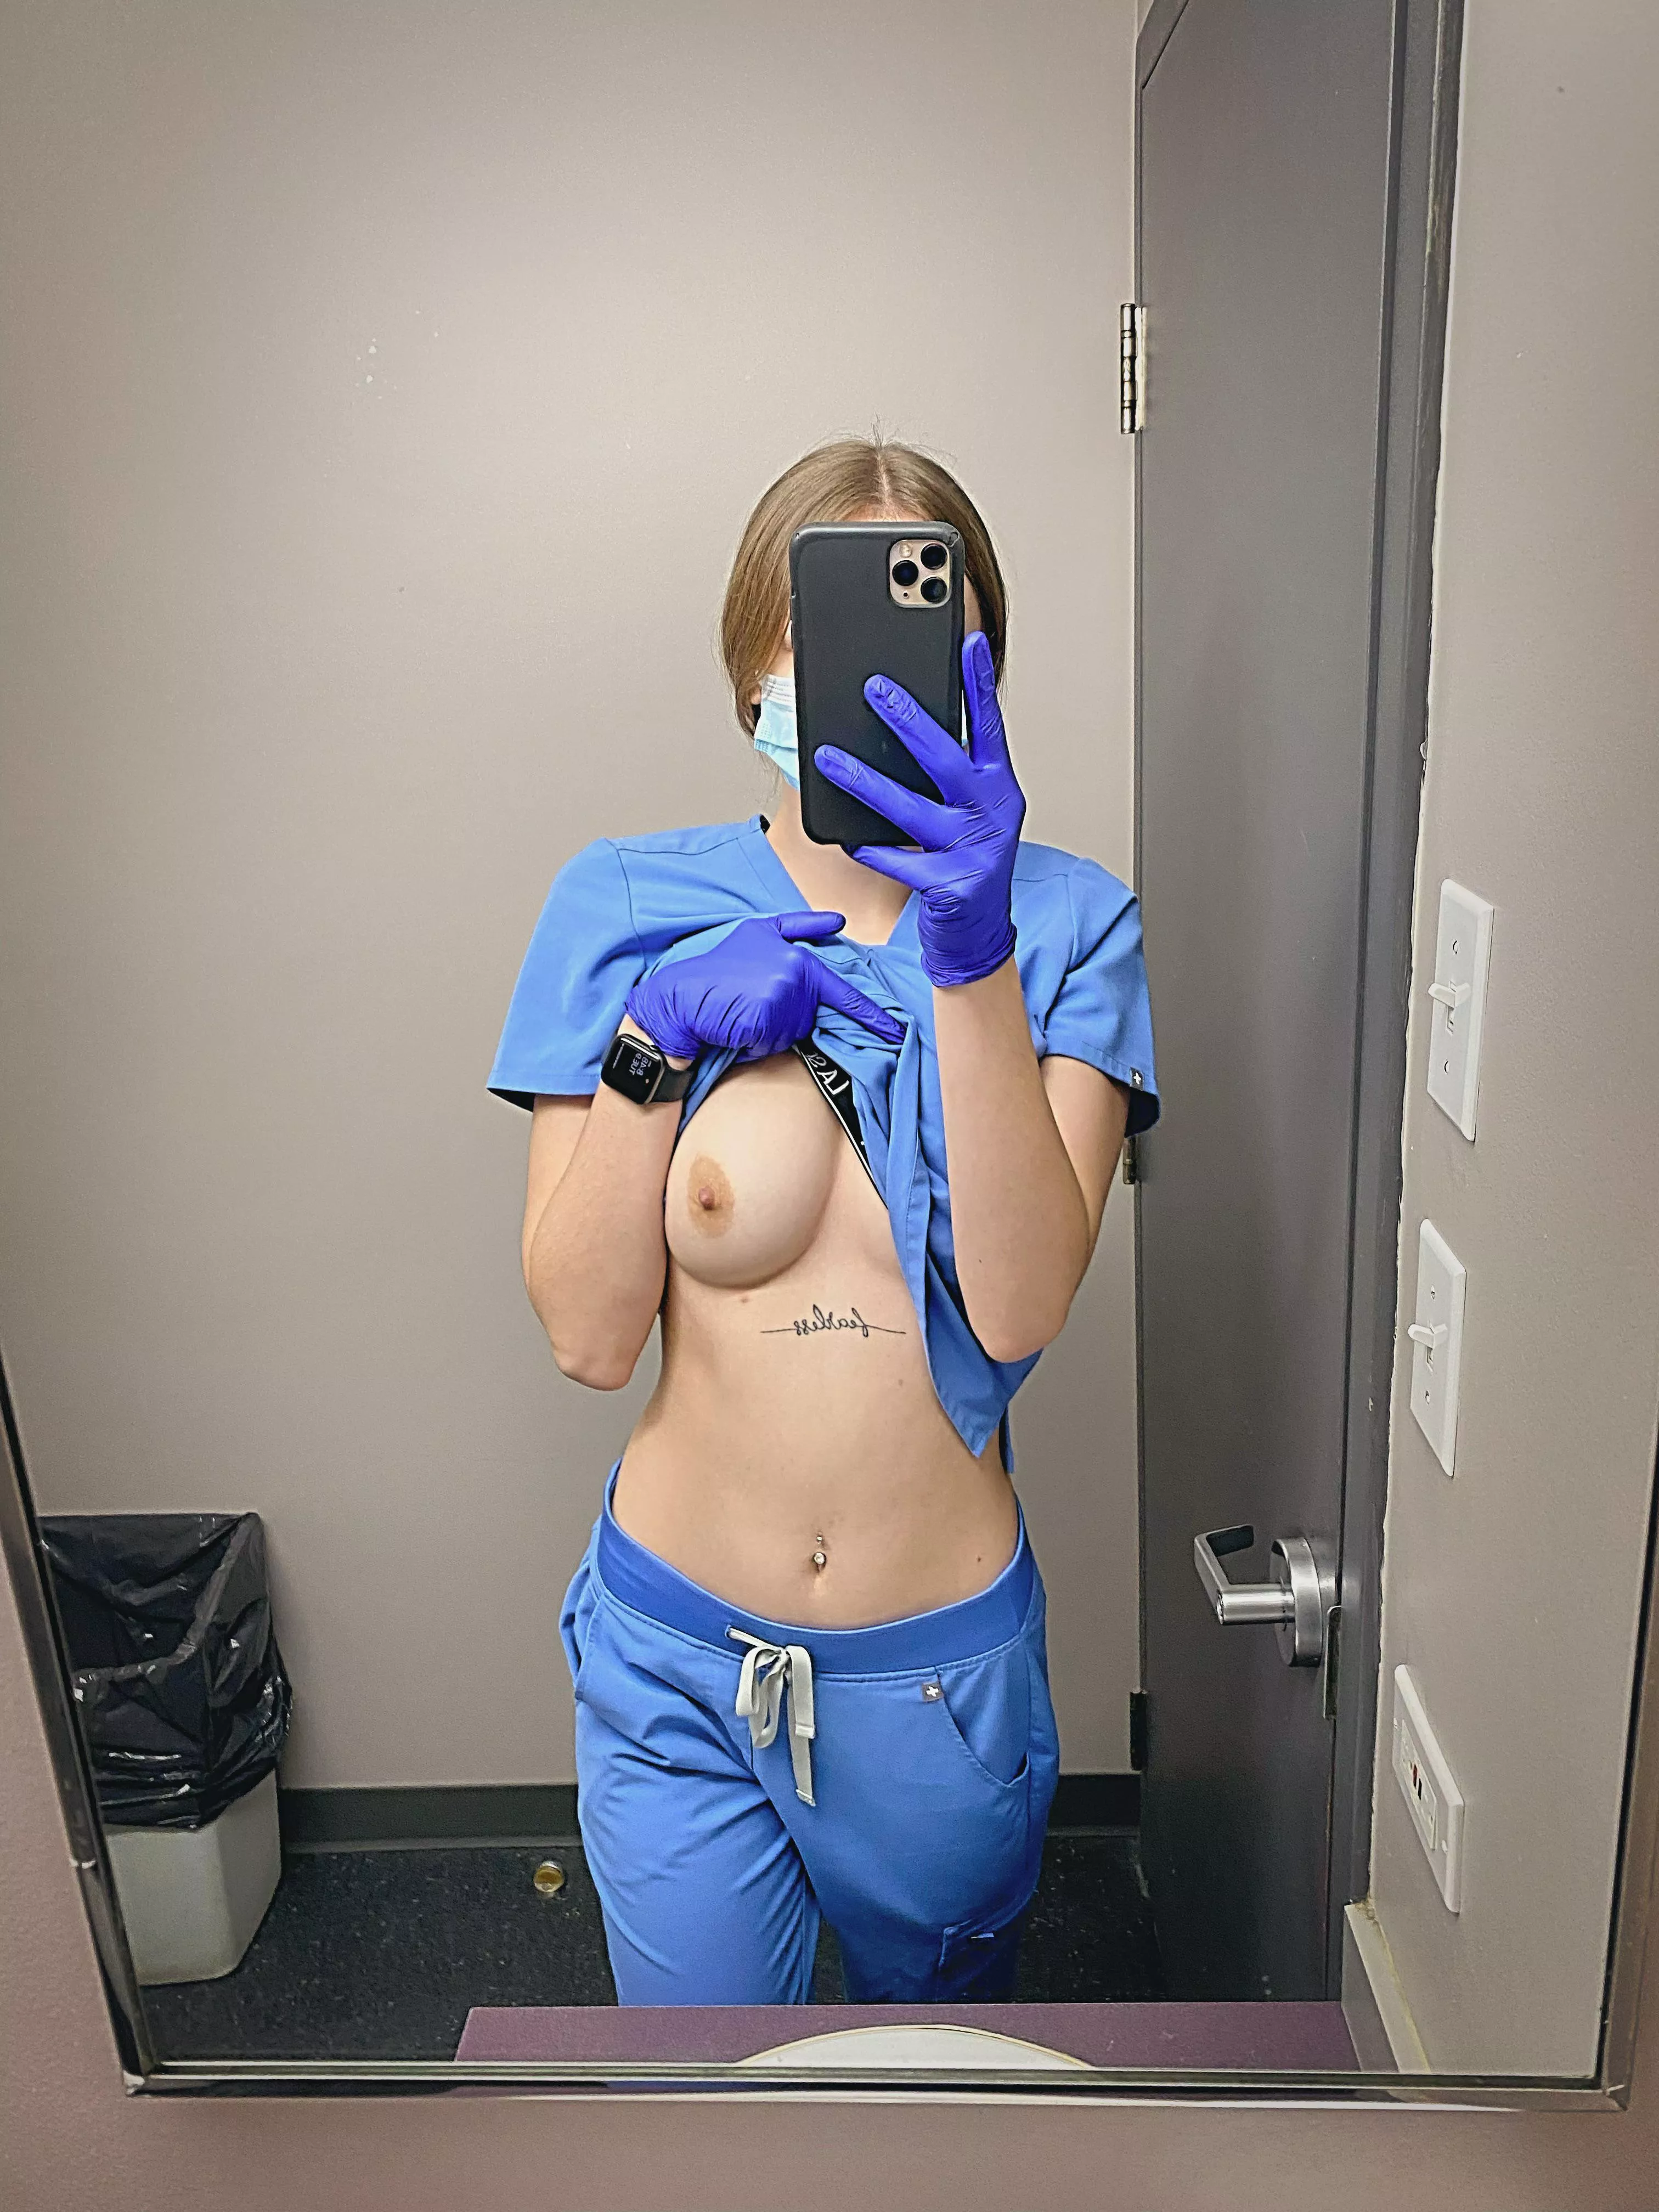 Petite Nurse Porn - Petite nurse nudes in petite | Onlynudes.org